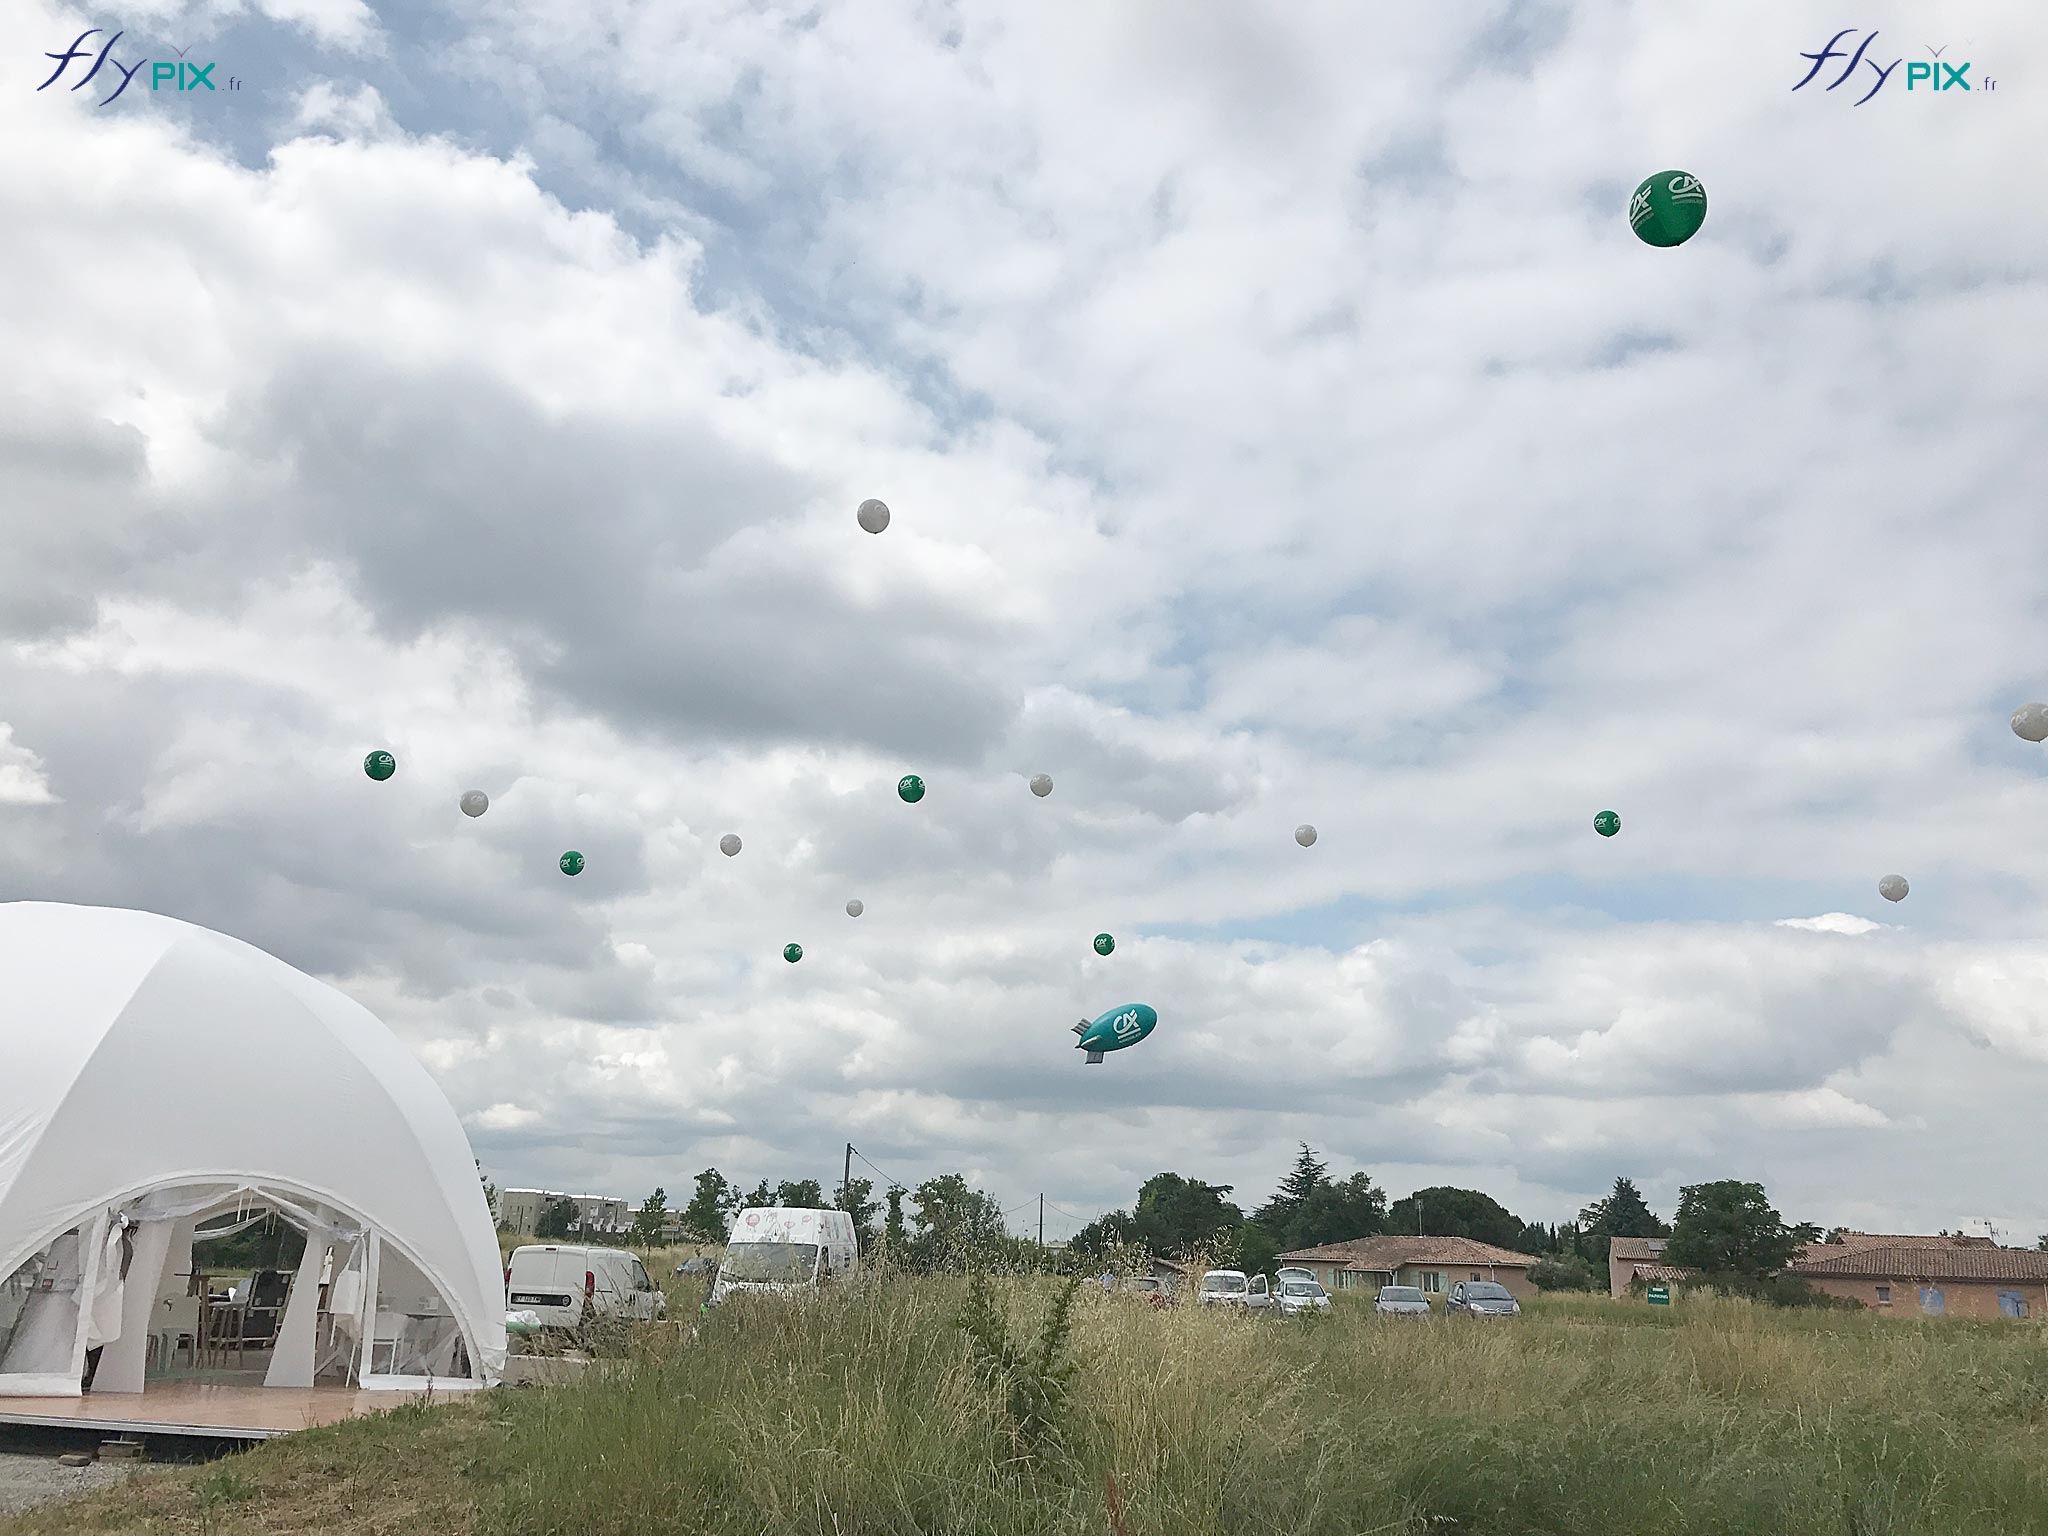 Plusieurs ballons personnalisés gonflés à l'hélium en vol au dessus d'un stand pendant un salon en extérieur, un jour de beau temps.